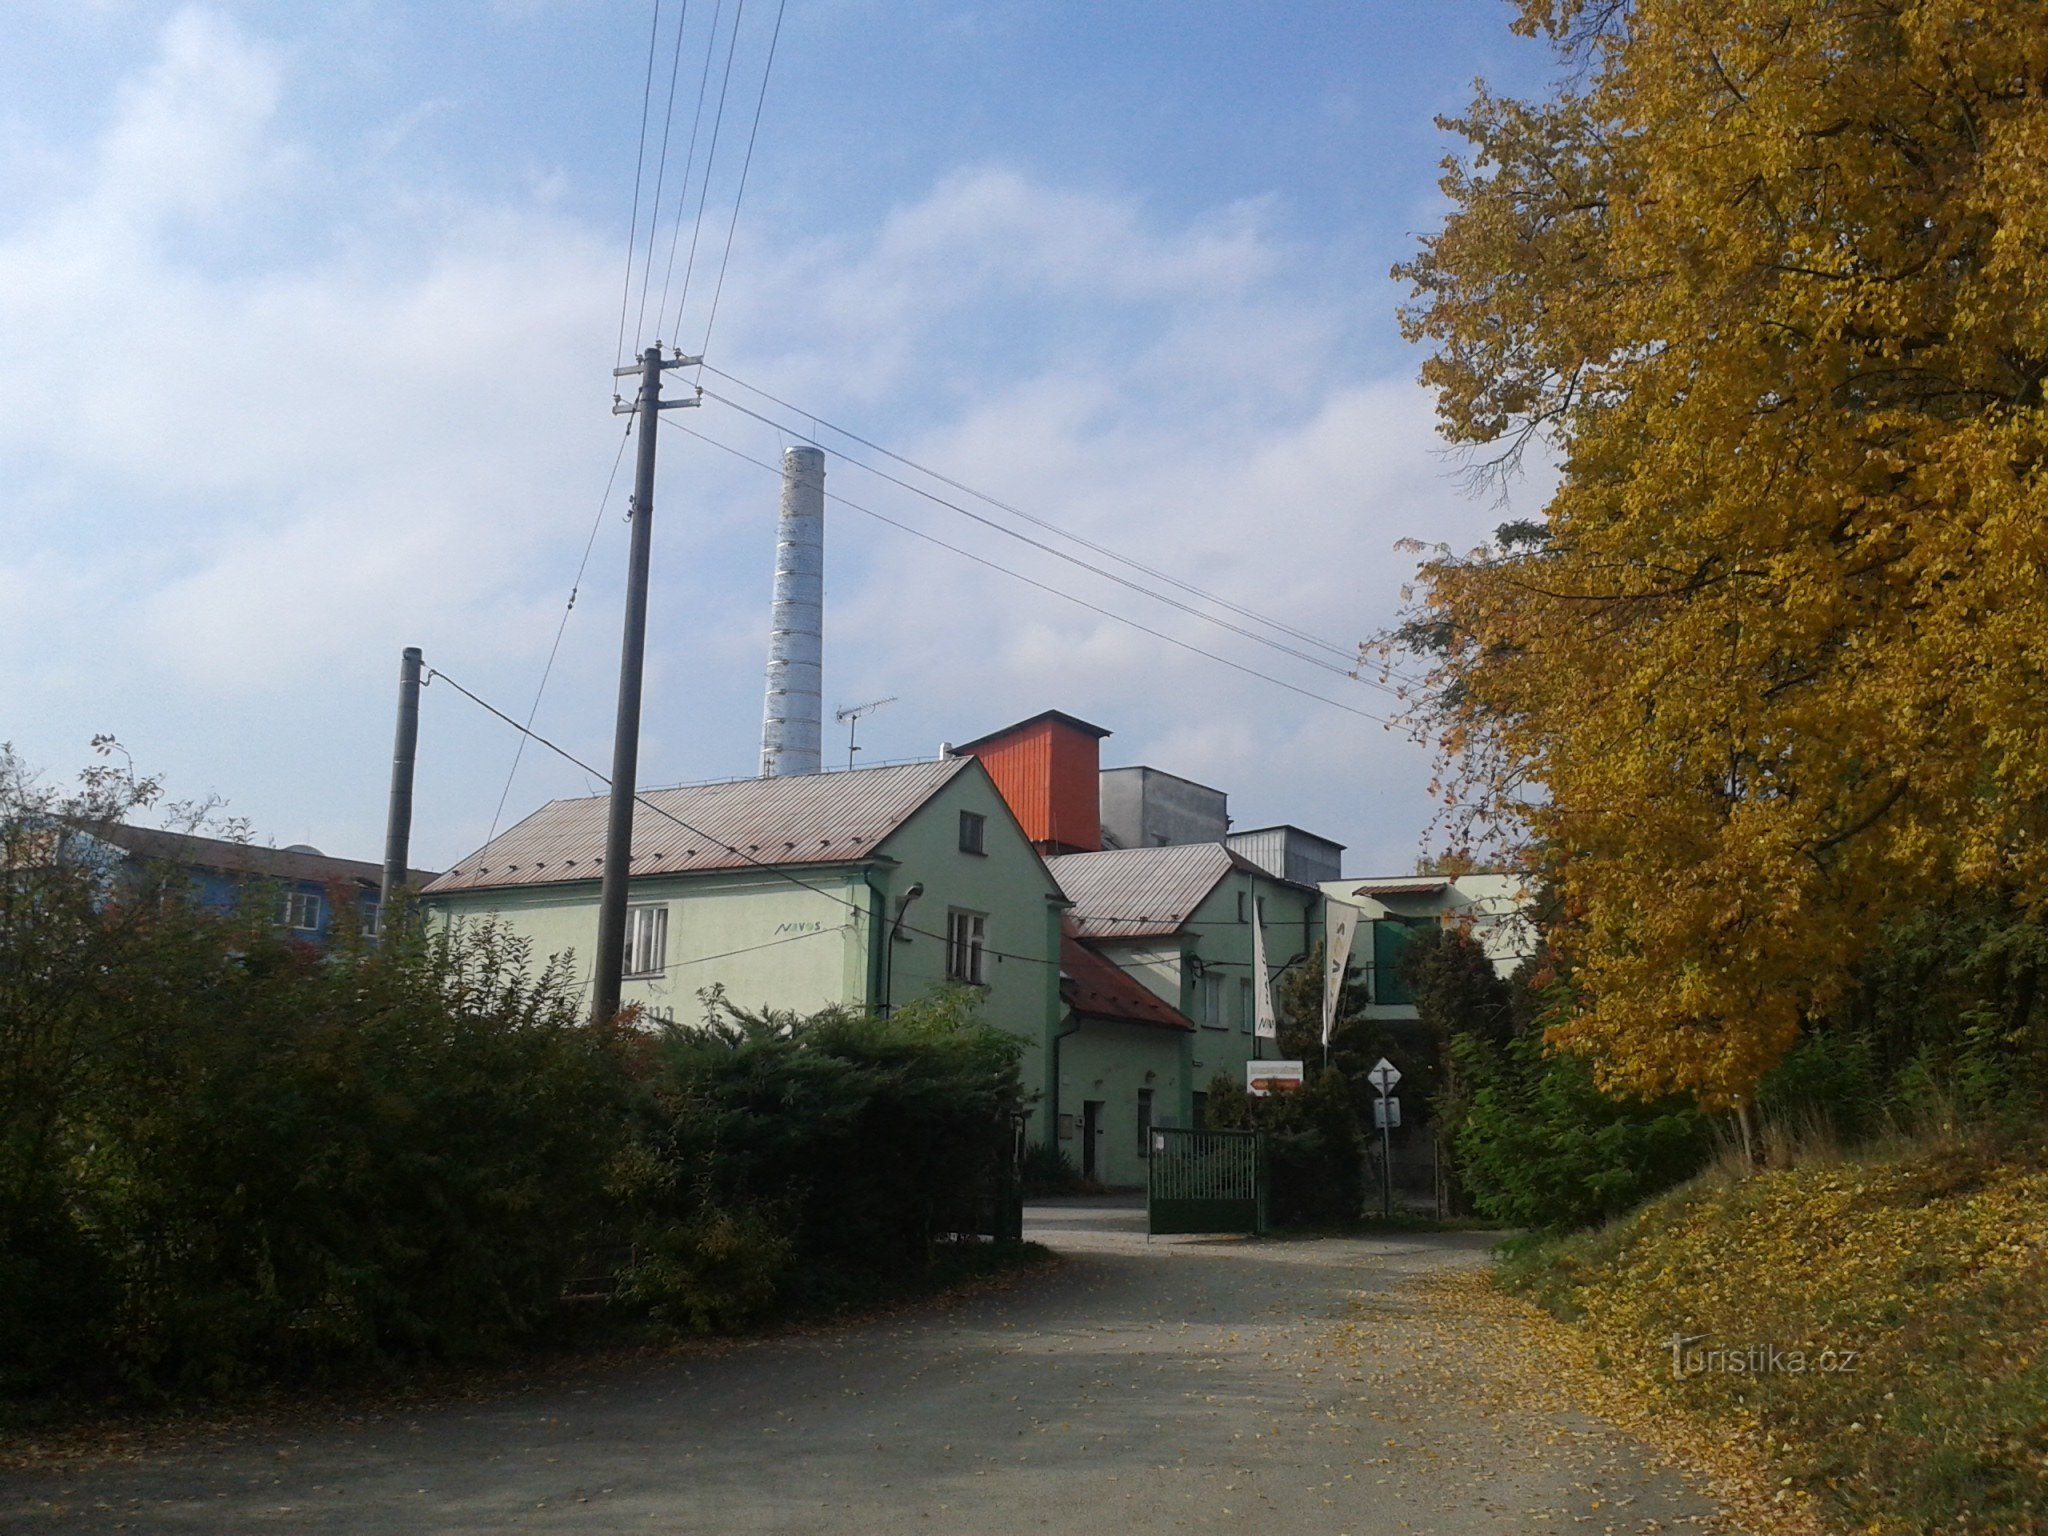 ликеро-водочный завод в Забржехе - мимо него не проходим, там узкая тропинка